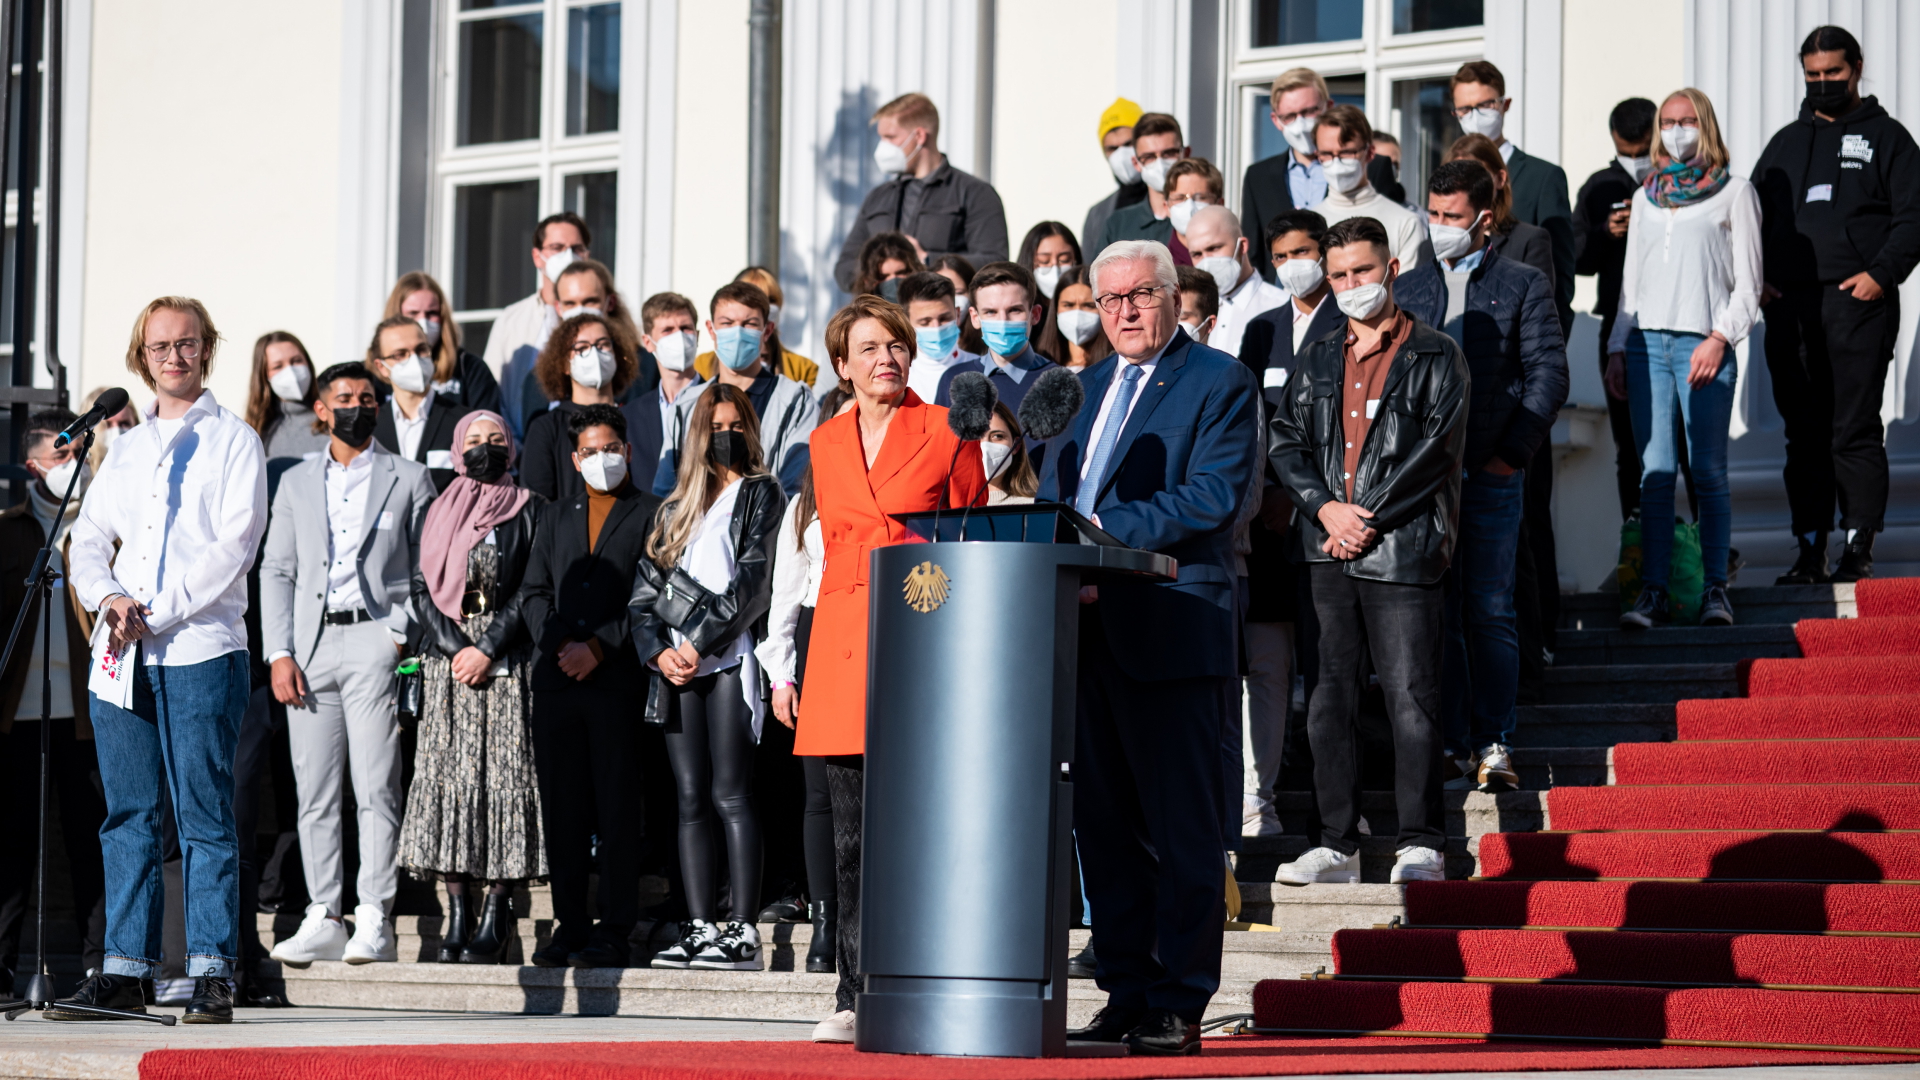  Bundespräsident Frank-Walter Steinmeier und seine Frau Elke Büdenbender begrüßen die Teilnehmer beim Aktionstag "Takeover Bellevue" vor dem Schloss Bellevue.  | dpa